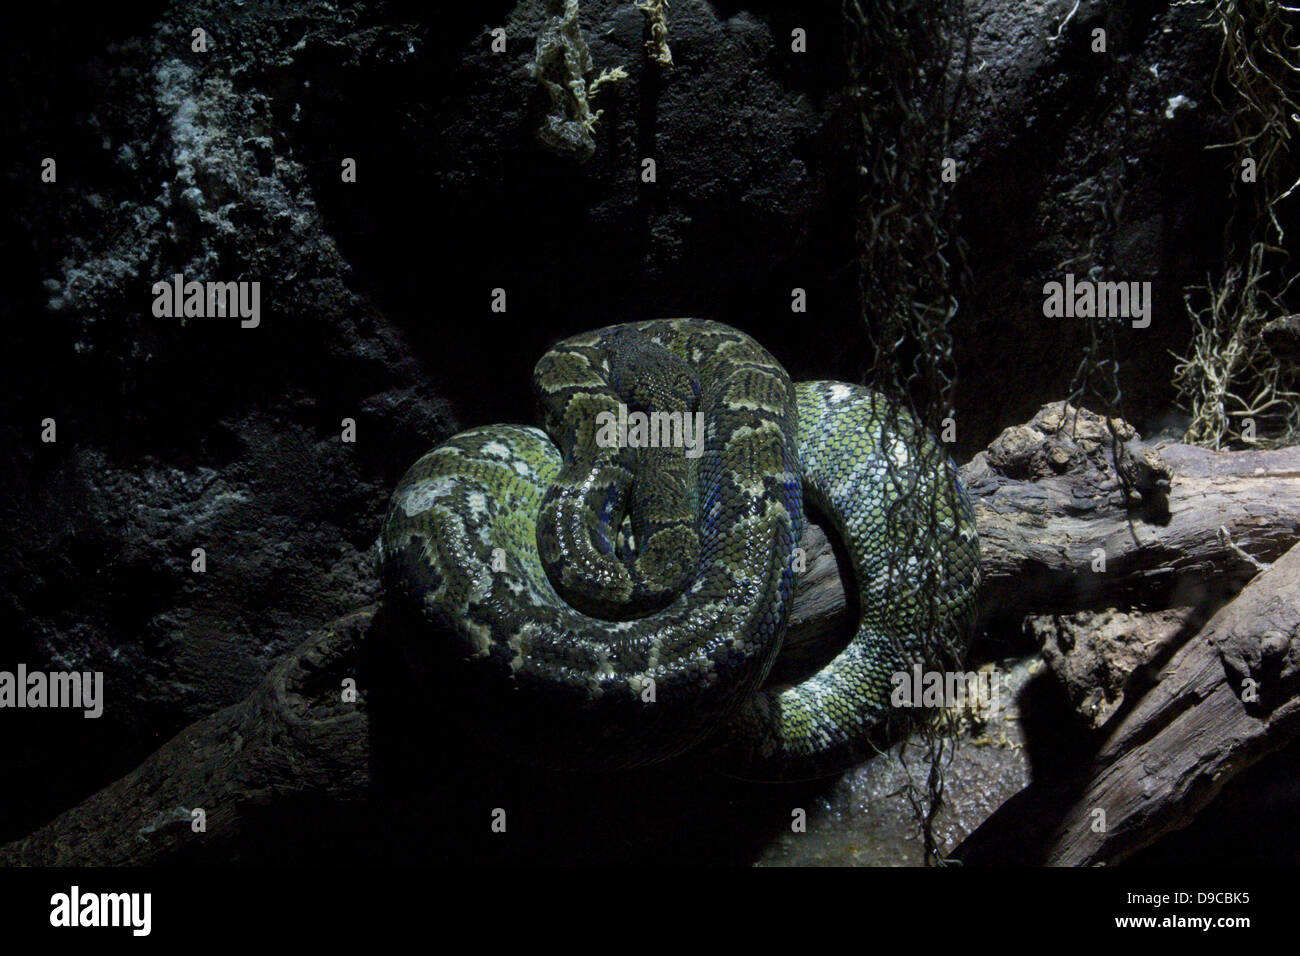 Un serpent en détail Banque D'Images